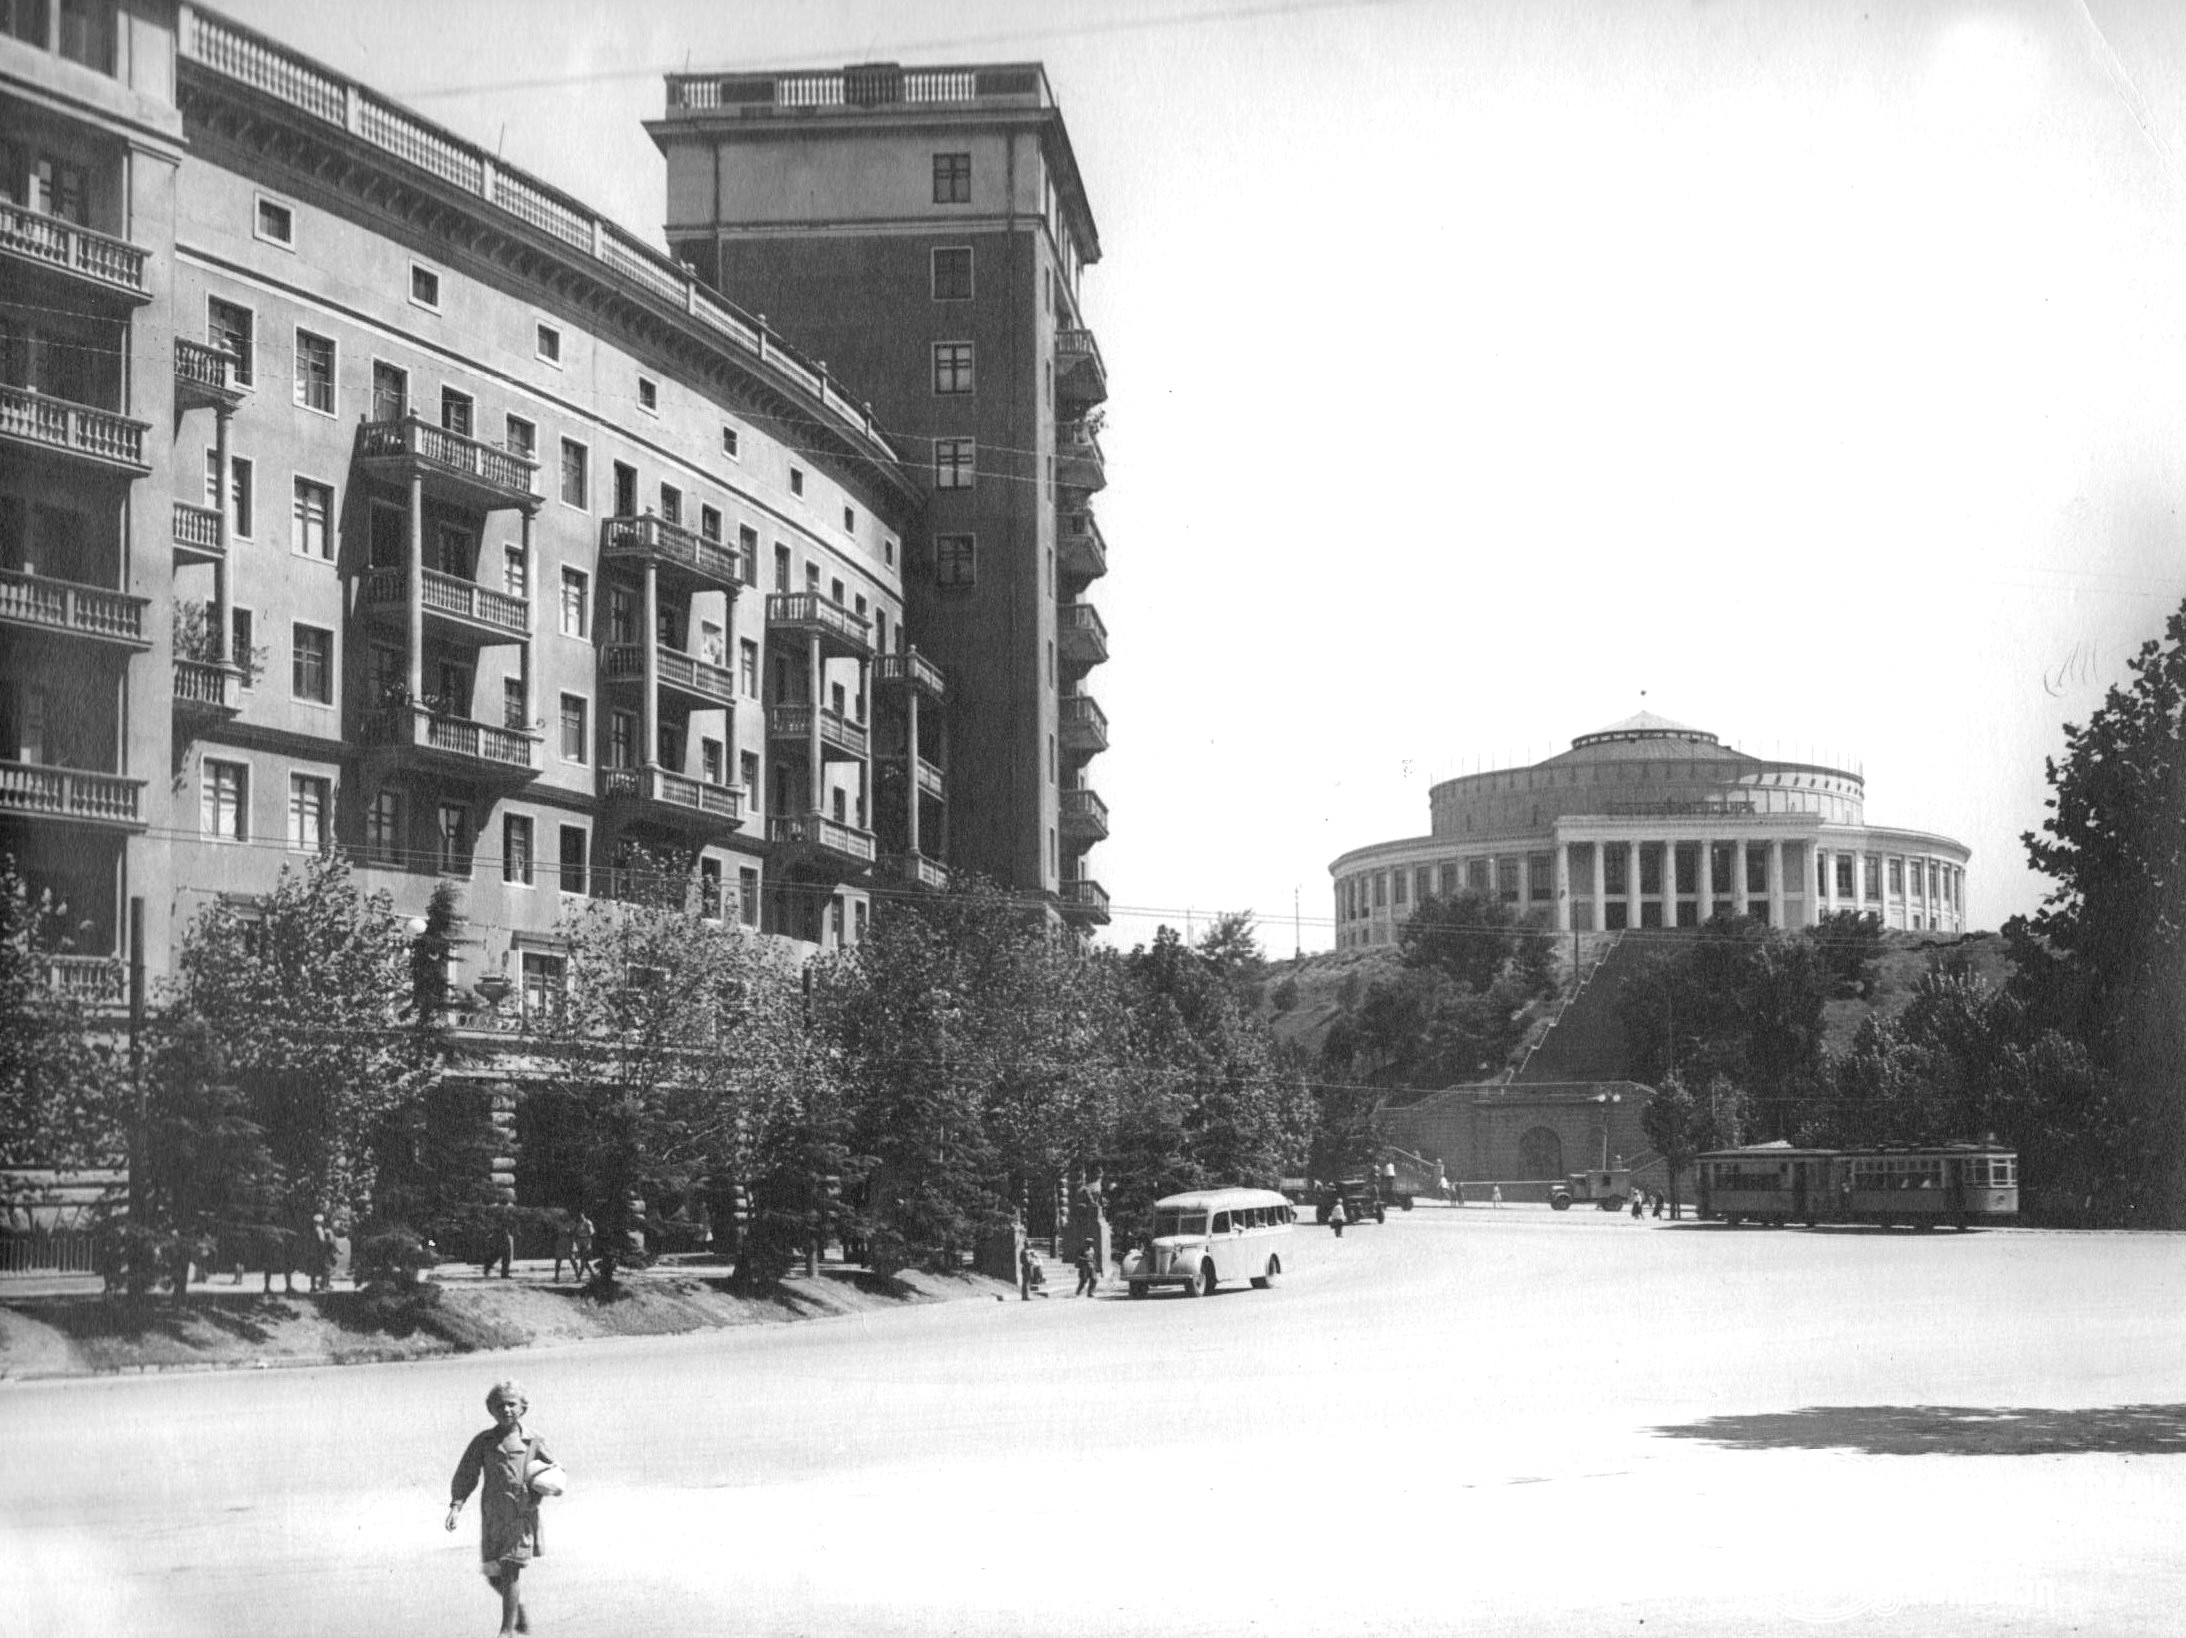 გმირთა მოედანი, 1940-იანი წლები.
<br>დაცულია გიორგი ბეჟანიშვილის ფონდში. 
<br> Heroes Square, 1940s.
<br>Preserved in Giorgi Bezhanishvili’s fonds.